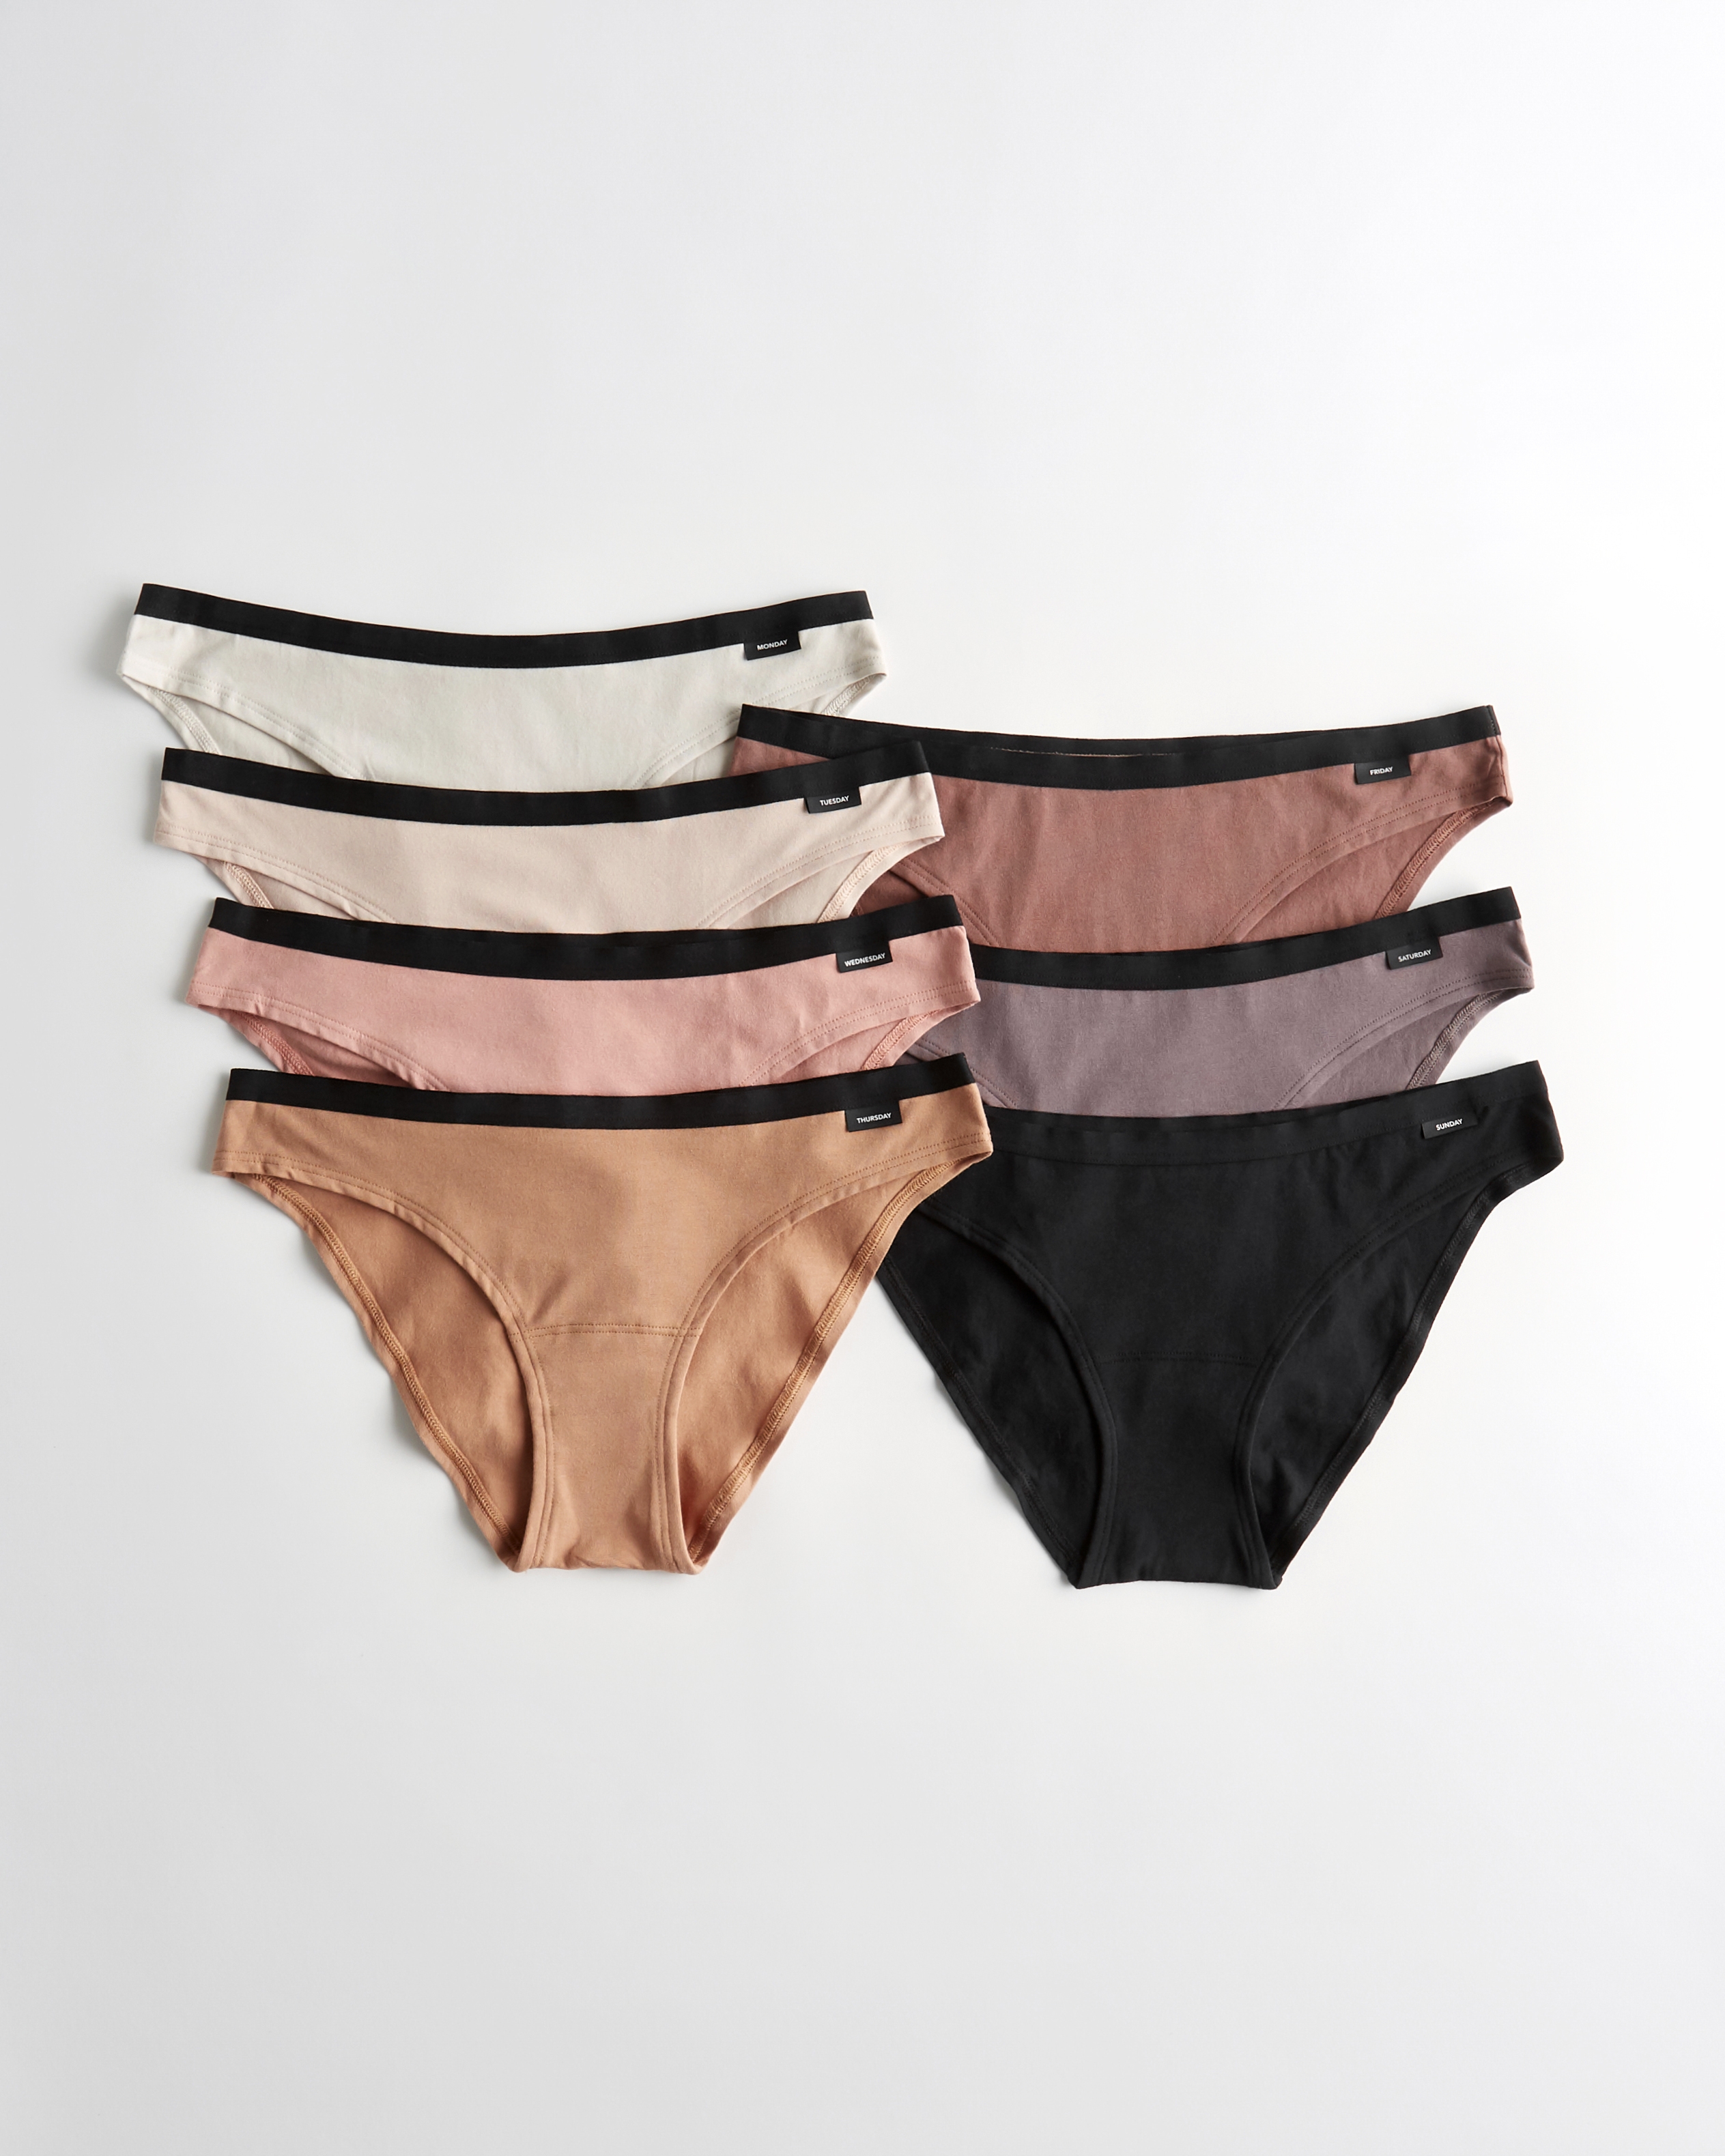 Hollister Gilly Hicks Cotton Bikini Underwear 7-Pack